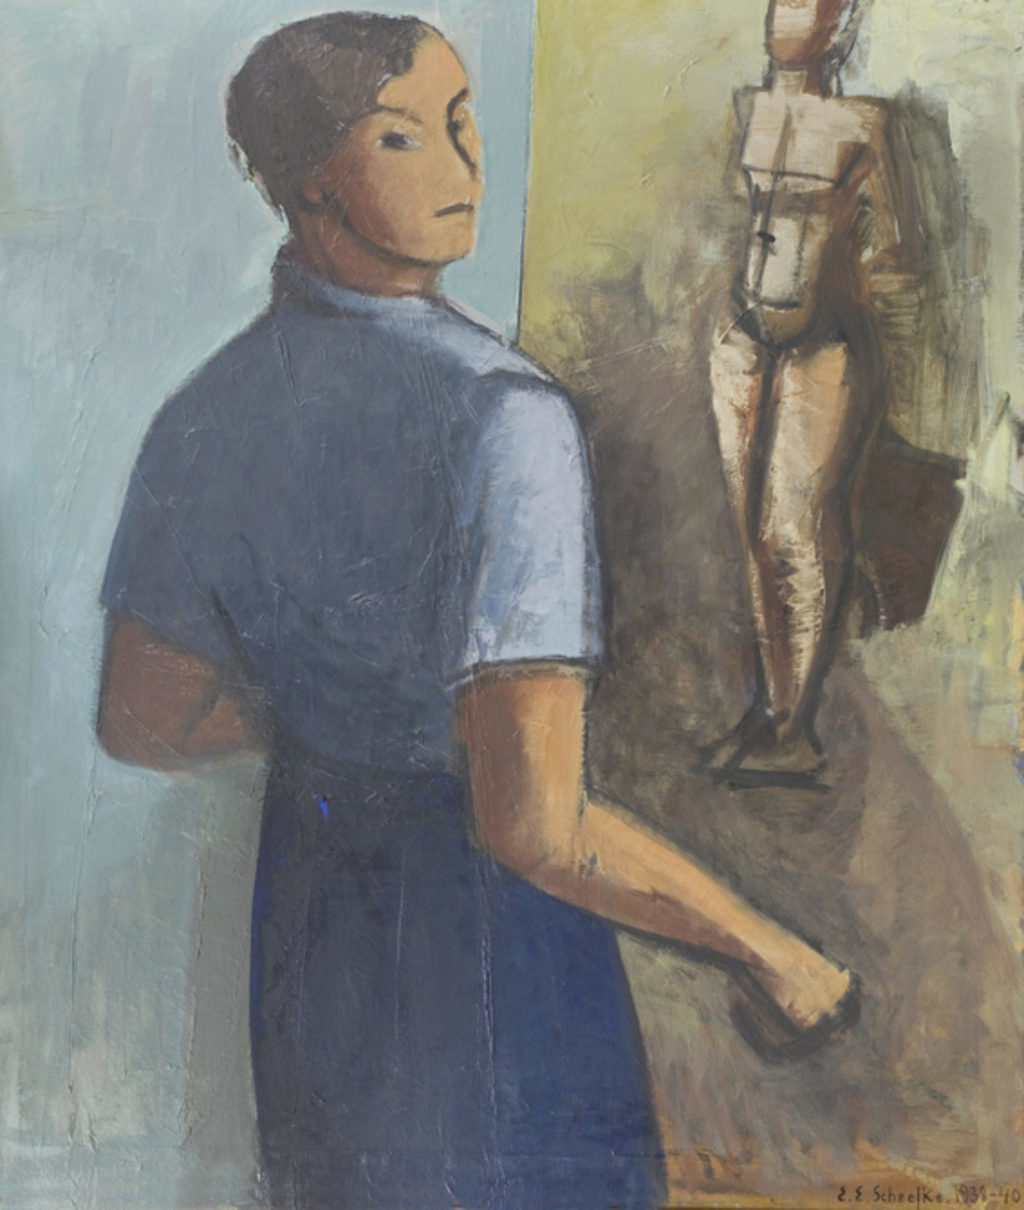 Ellen Scheelke, "Selvportræt",1928-1940